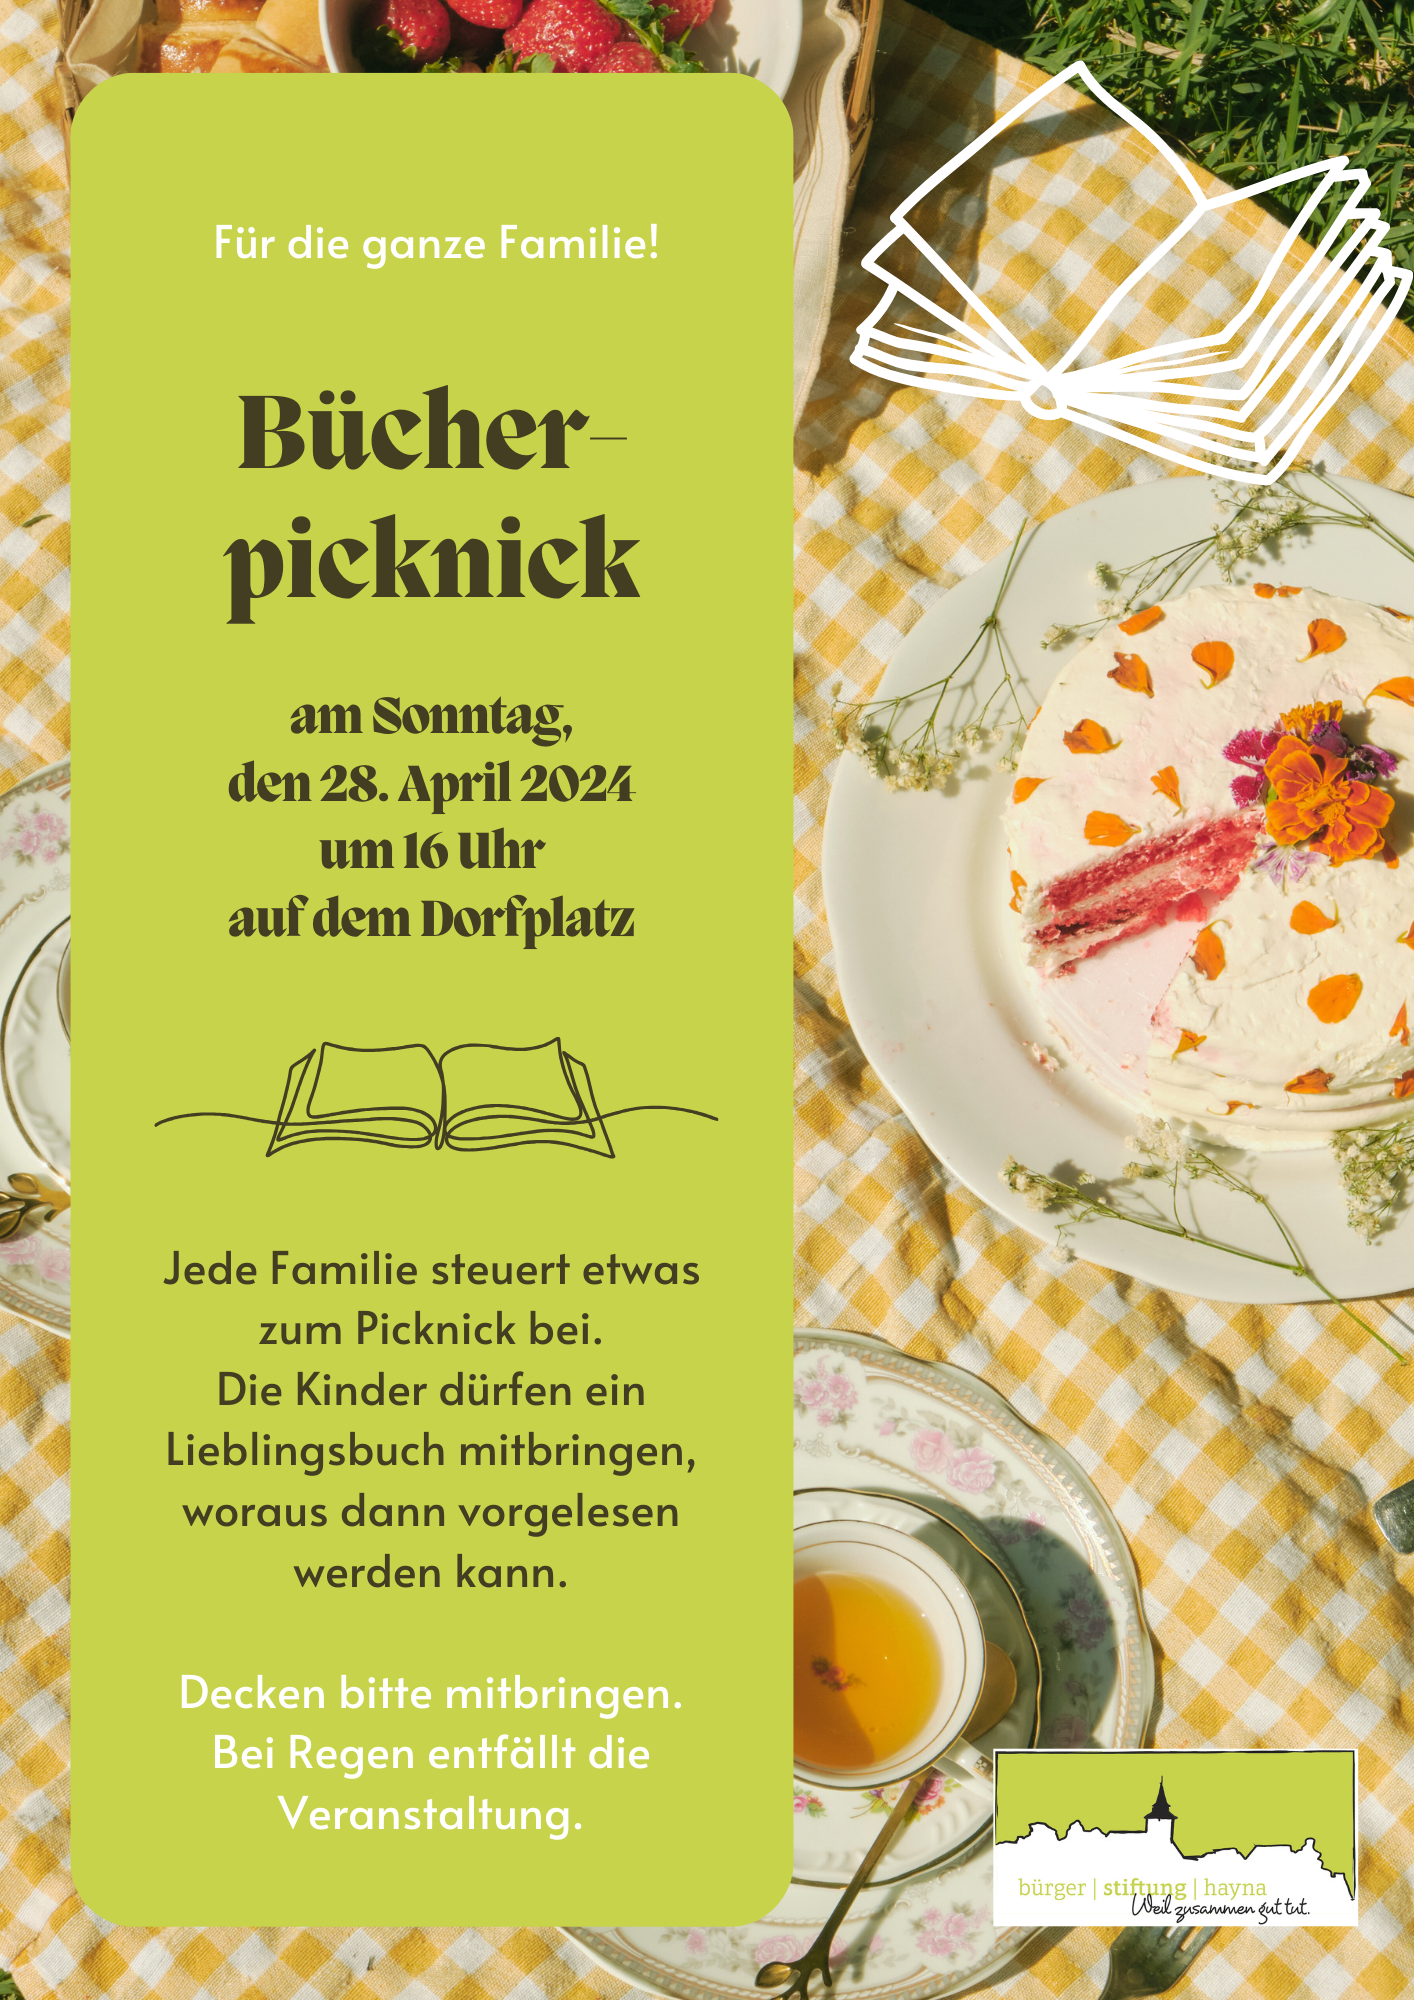 Save the Date: Bücherpicknick auf dem Dorfplatz!